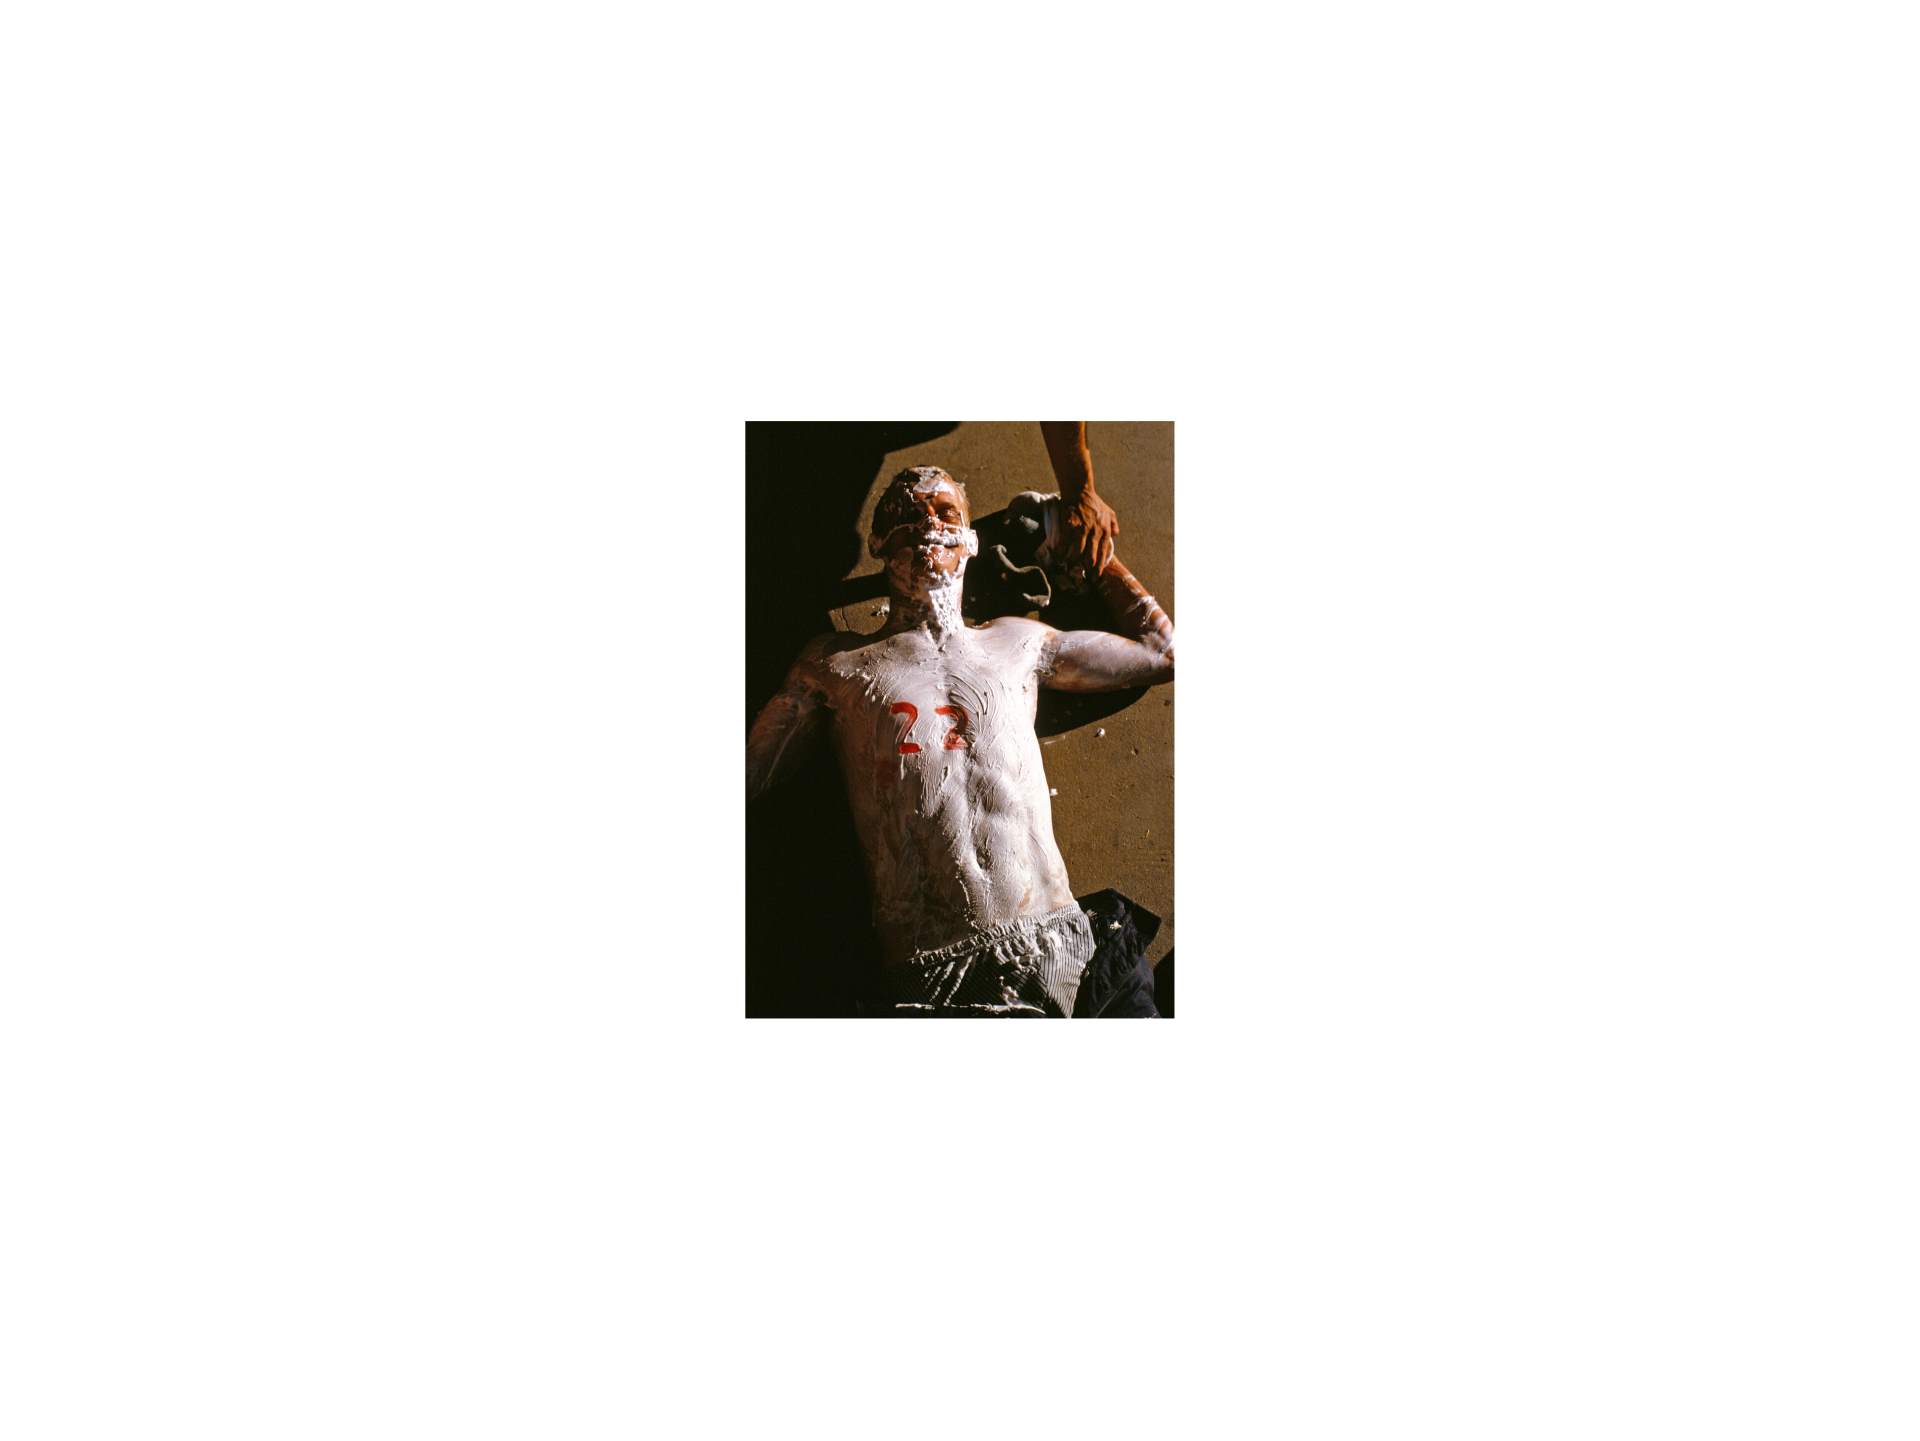 Stephen Symons, Conscript portrait, SAS Saldanha, February 1990, Digital print from slide, 59.8 cm × 79.7 cm (23 ½ in. × 31 in.)